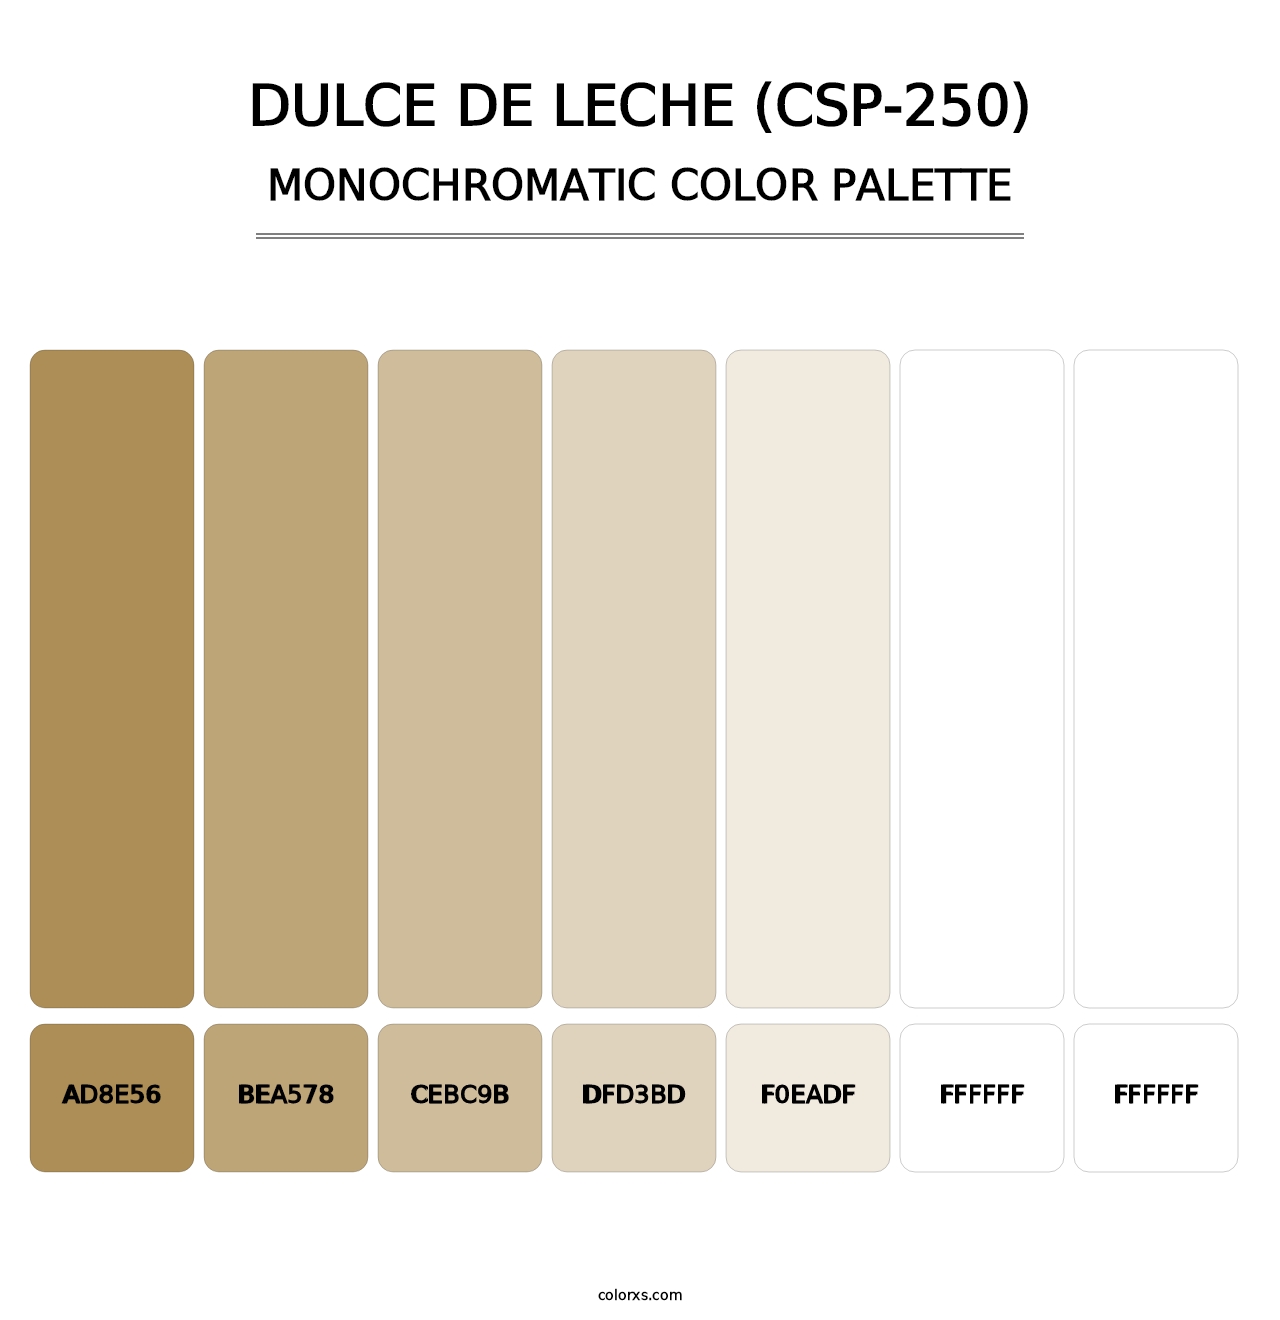 Dulce de Leche (CSP-250) - Monochromatic Color Palette